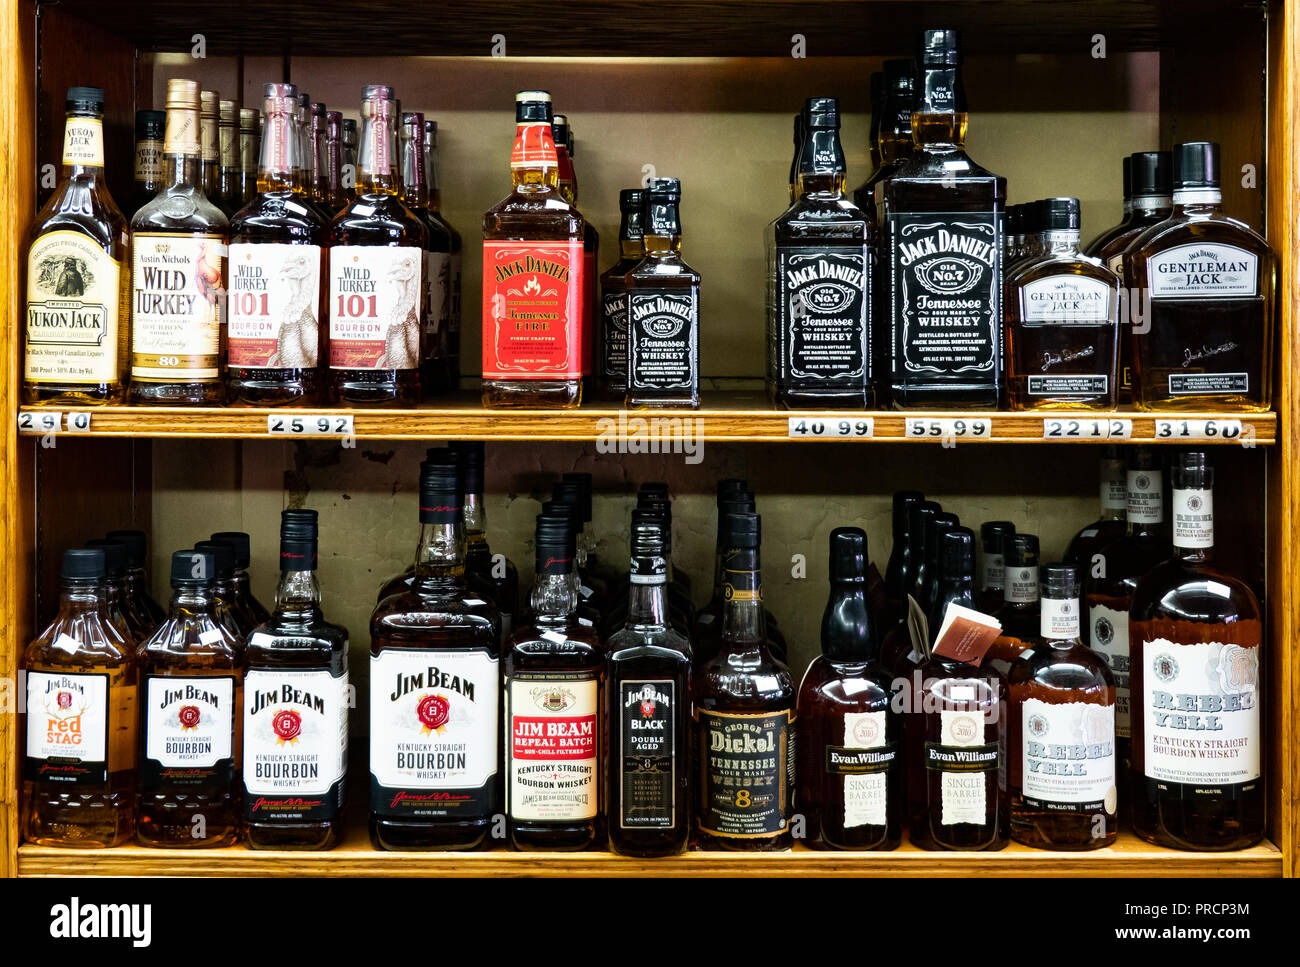 Shelves full of bottles of premium whiskey in a liquor store in Speculator, NY USA. Stock Photo